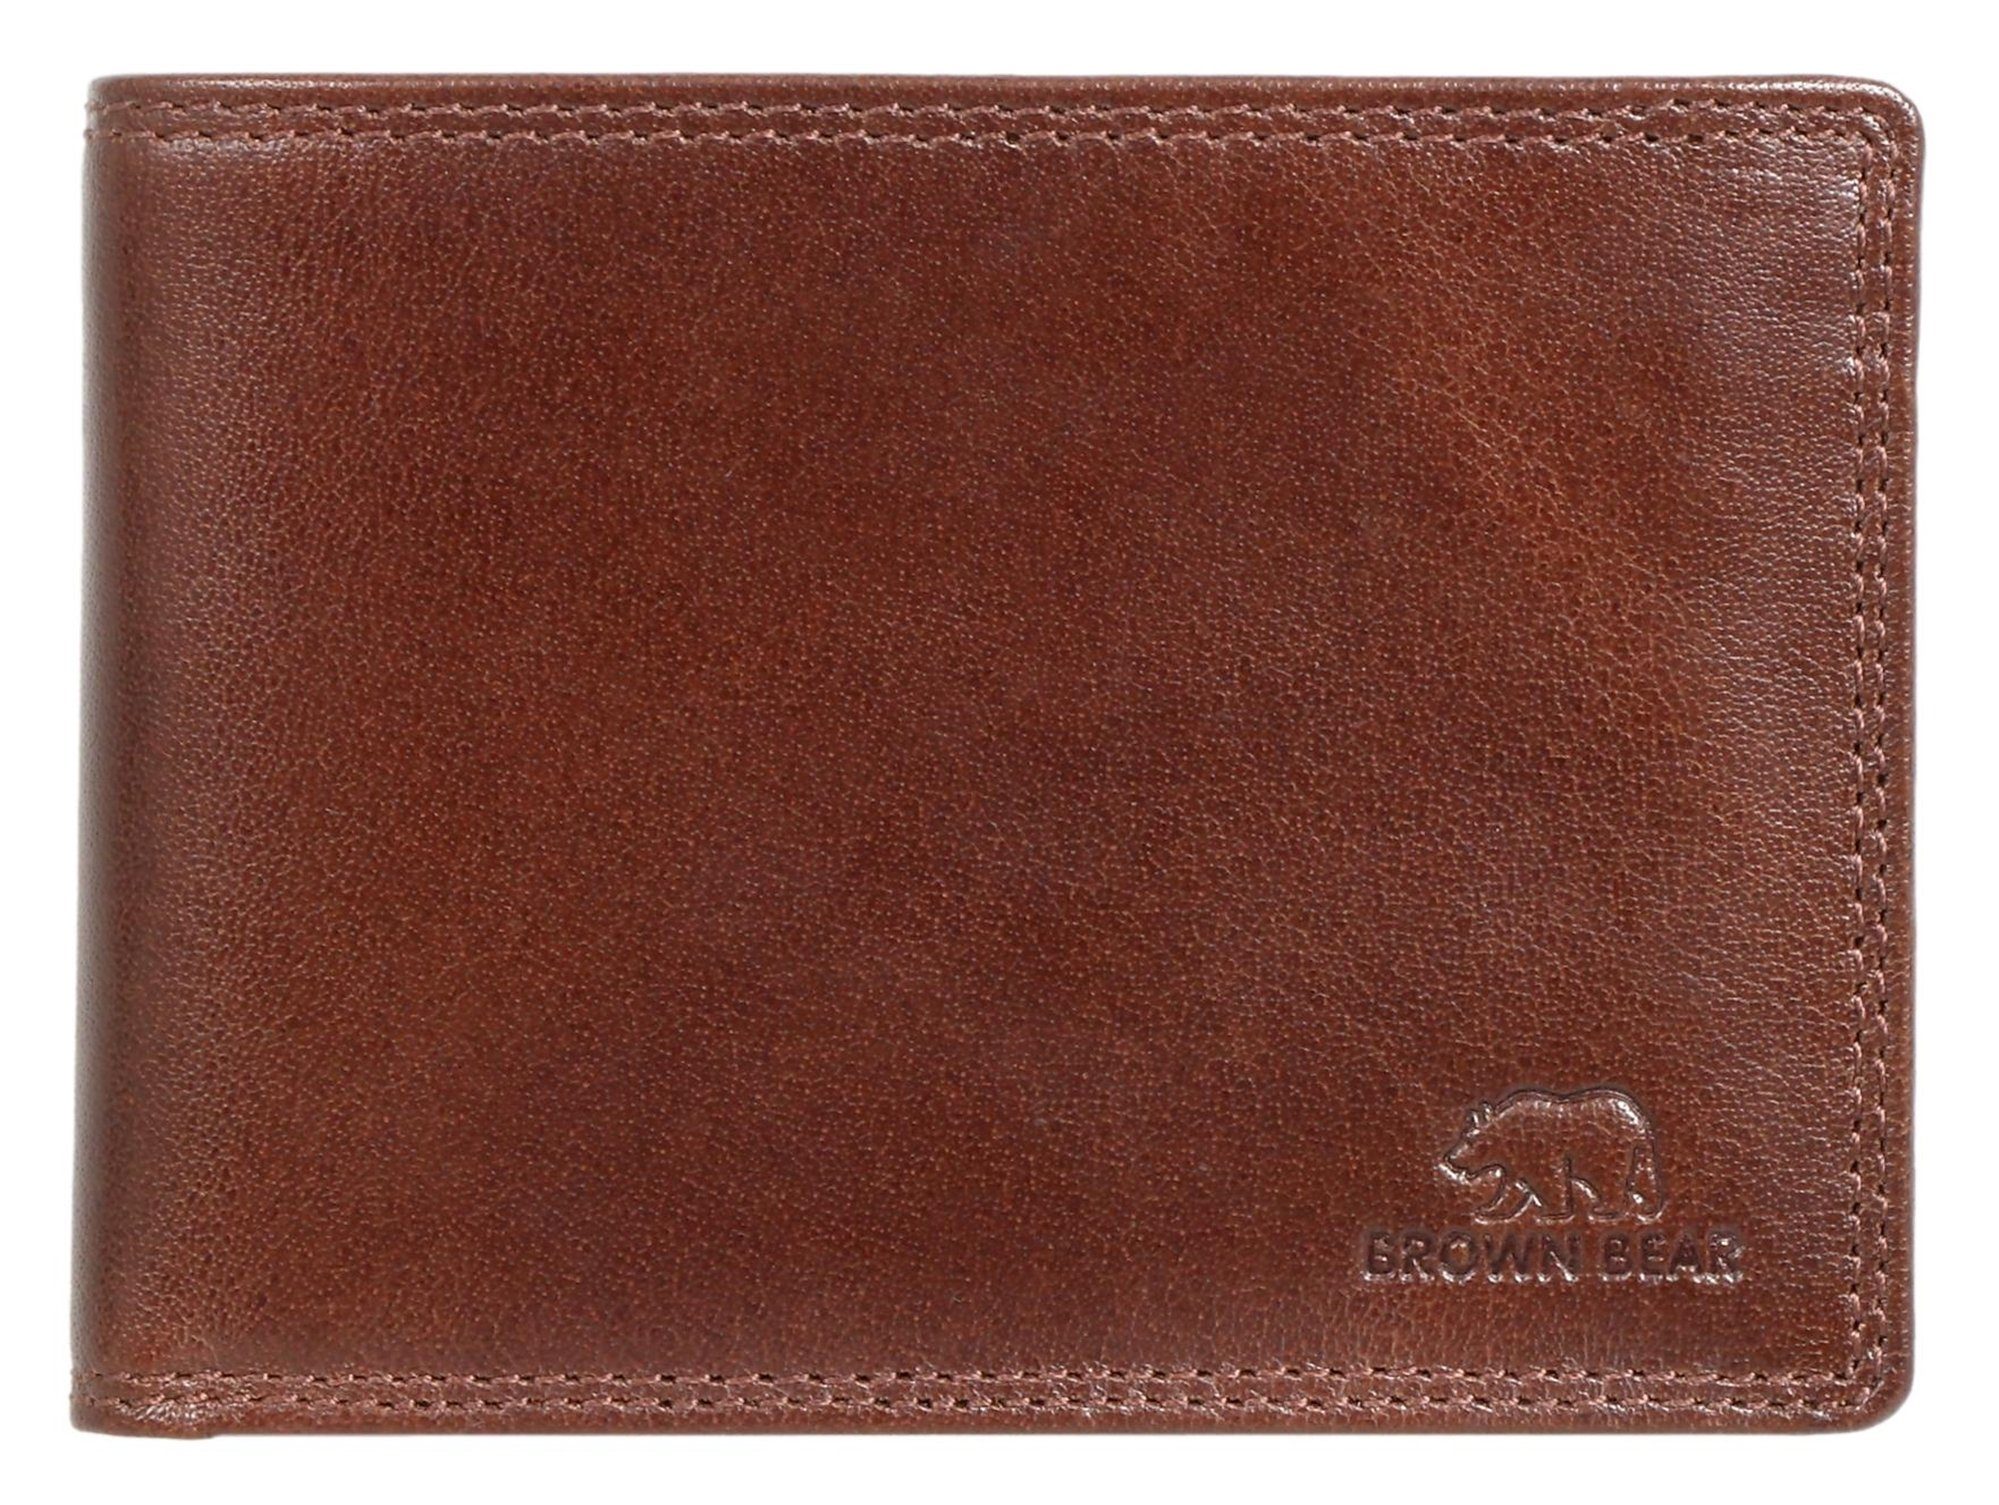 Herren D Echtleder, klassisches Bear 9 Toscana RFID-Schutz Geldbörse Brown Braun Kartenfächern 8005 und mit Modell Portemonnaie Braun aus